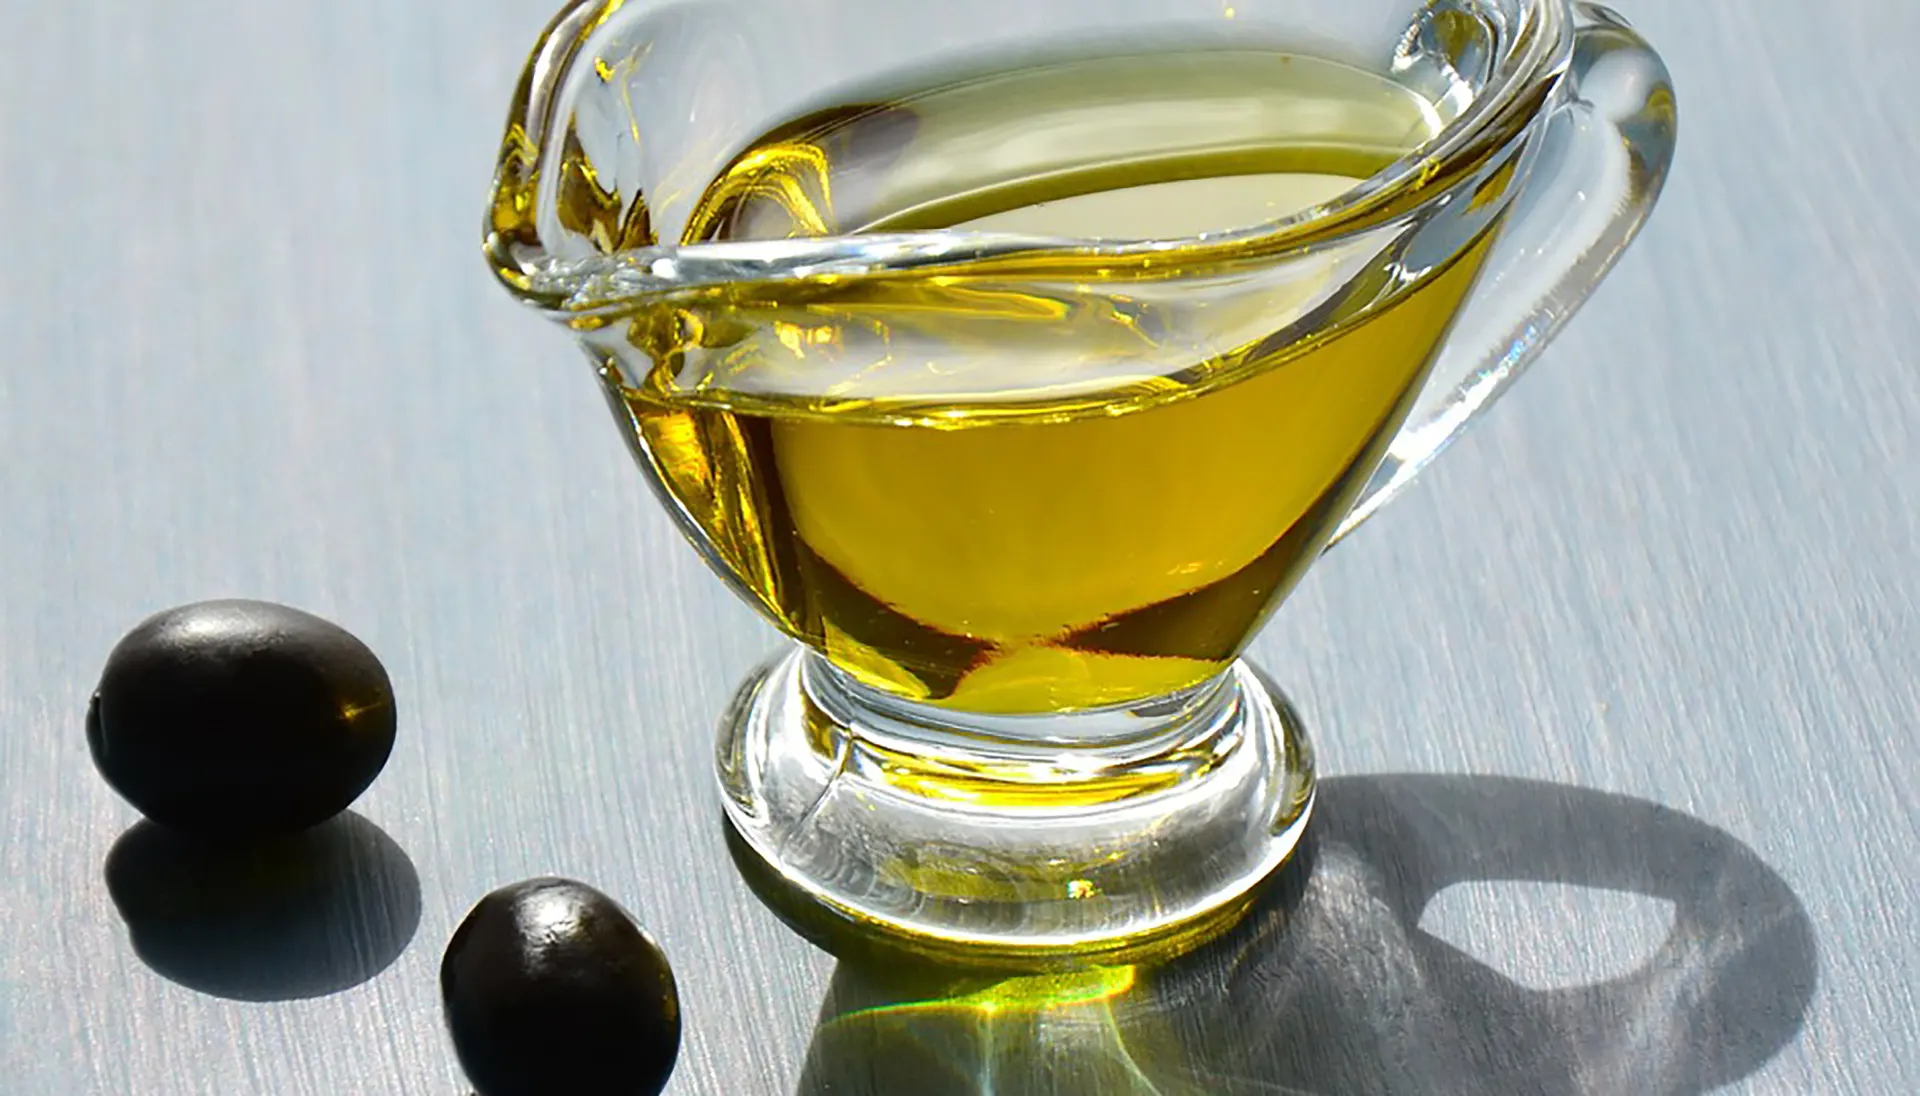 Escasez de aceite de oliva virgen extra: cambios en cosméticos